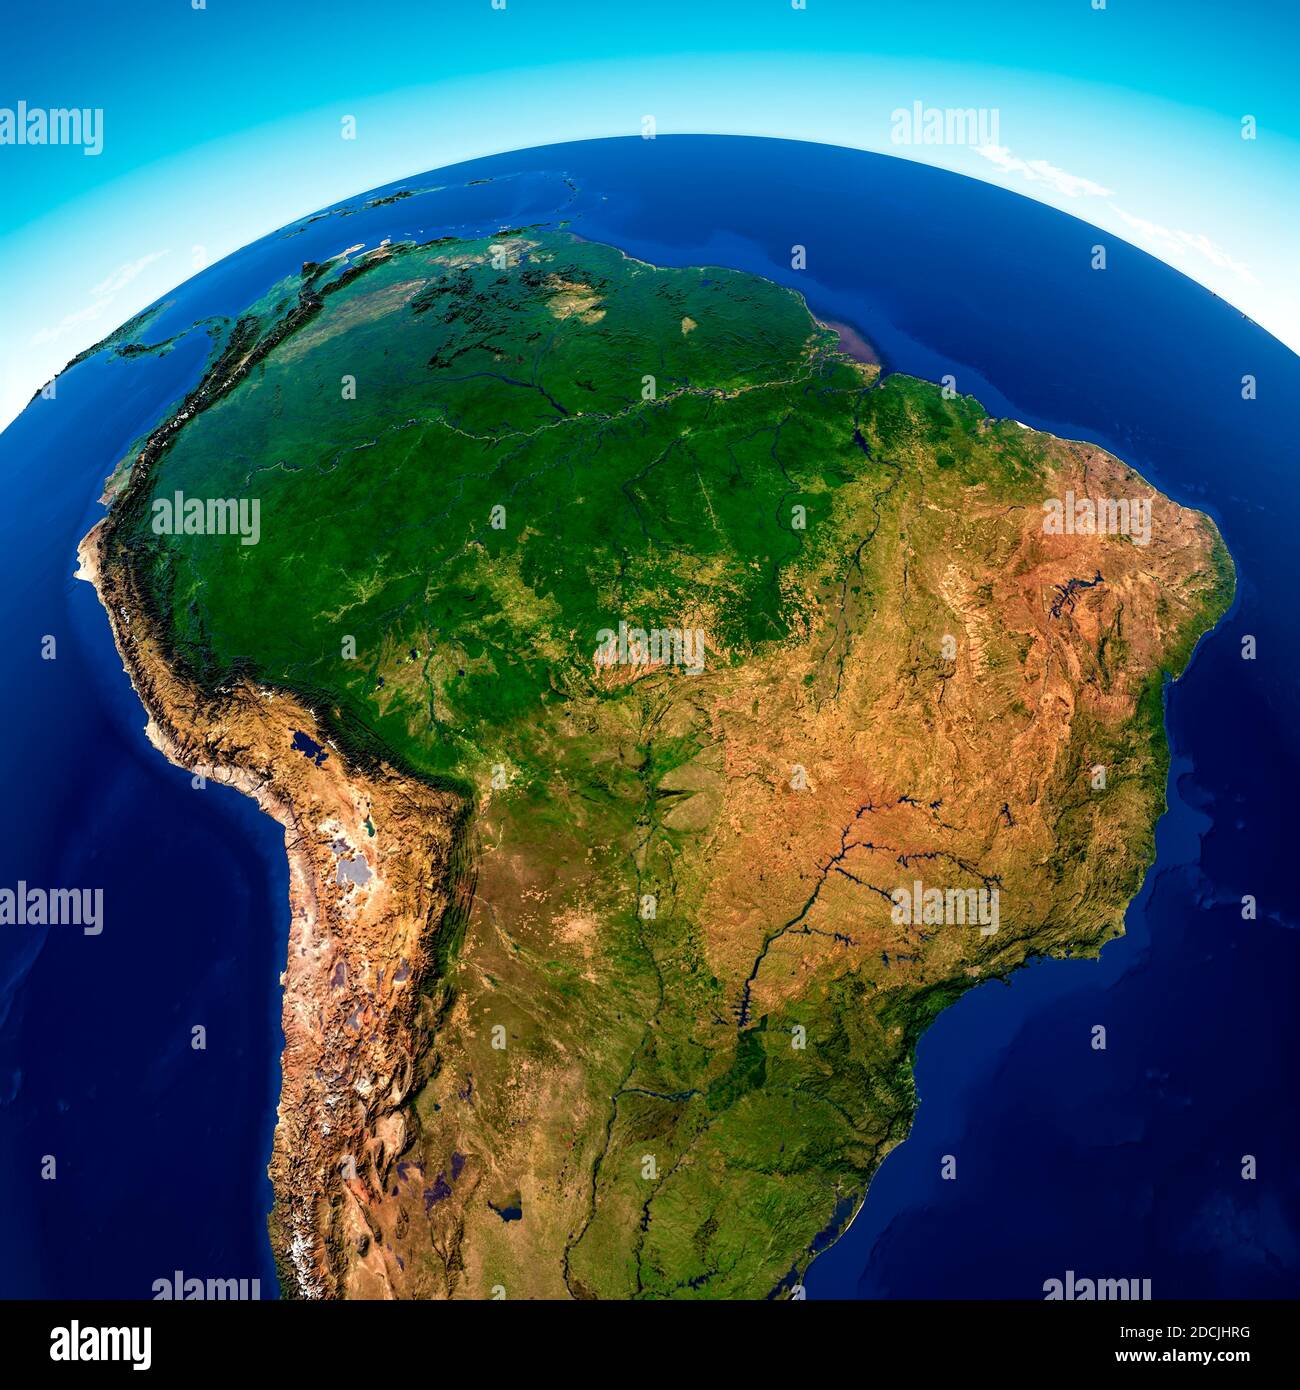 Vue satellite de la forêt amazonienne, carte, États d'Amérique du Sud, reliefs et plaines, carte physique. Déforestation forestière. rendu 3d Banque D'Images